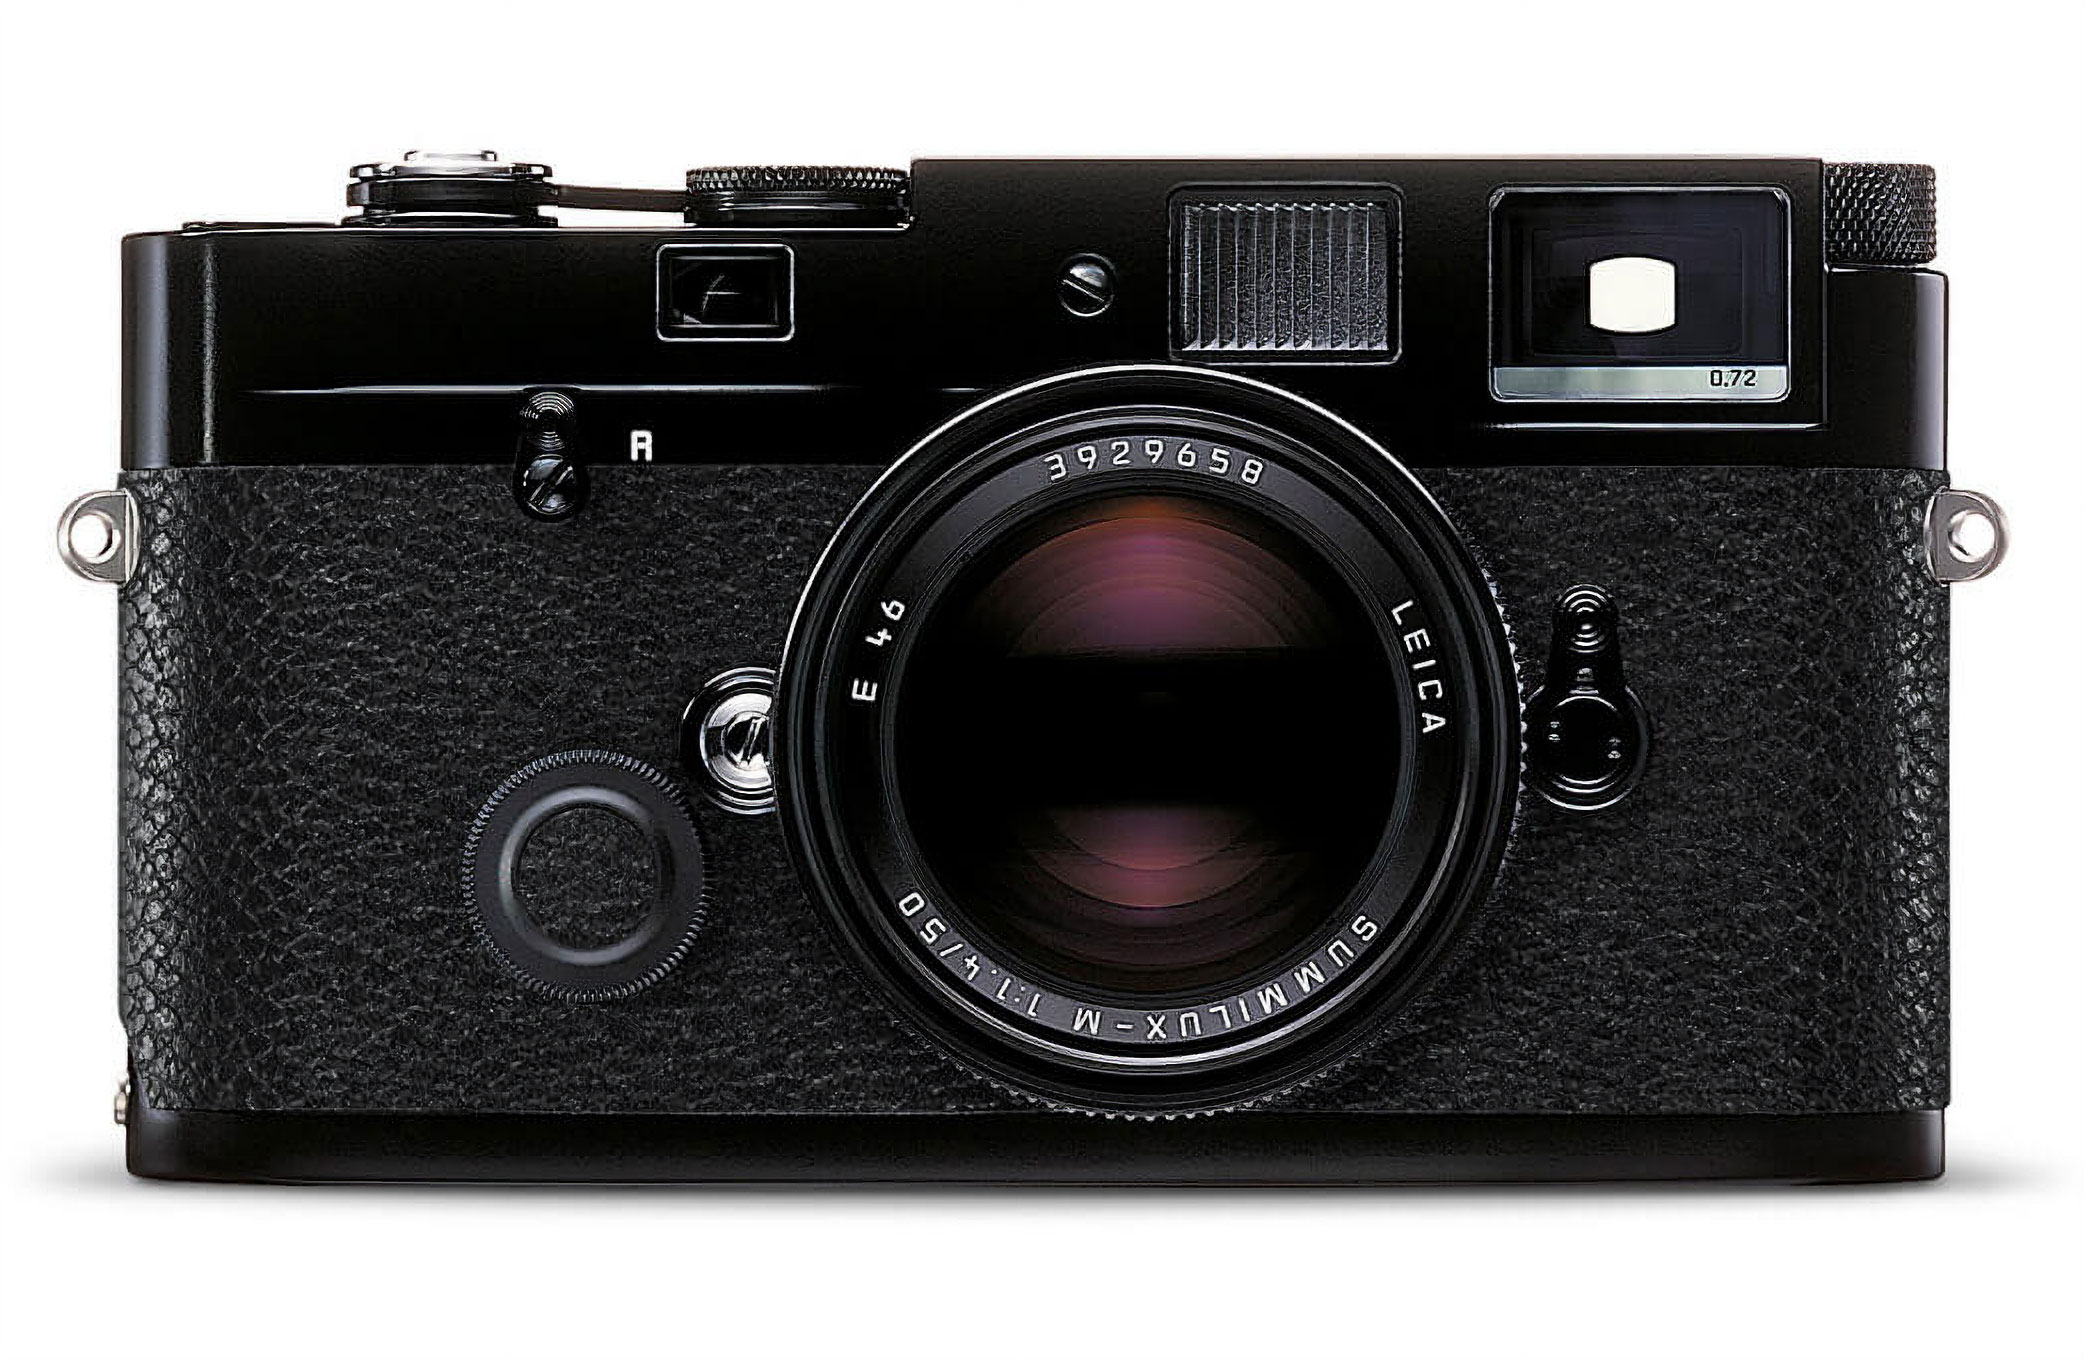 Leica MP 0.72 (a pellicola)